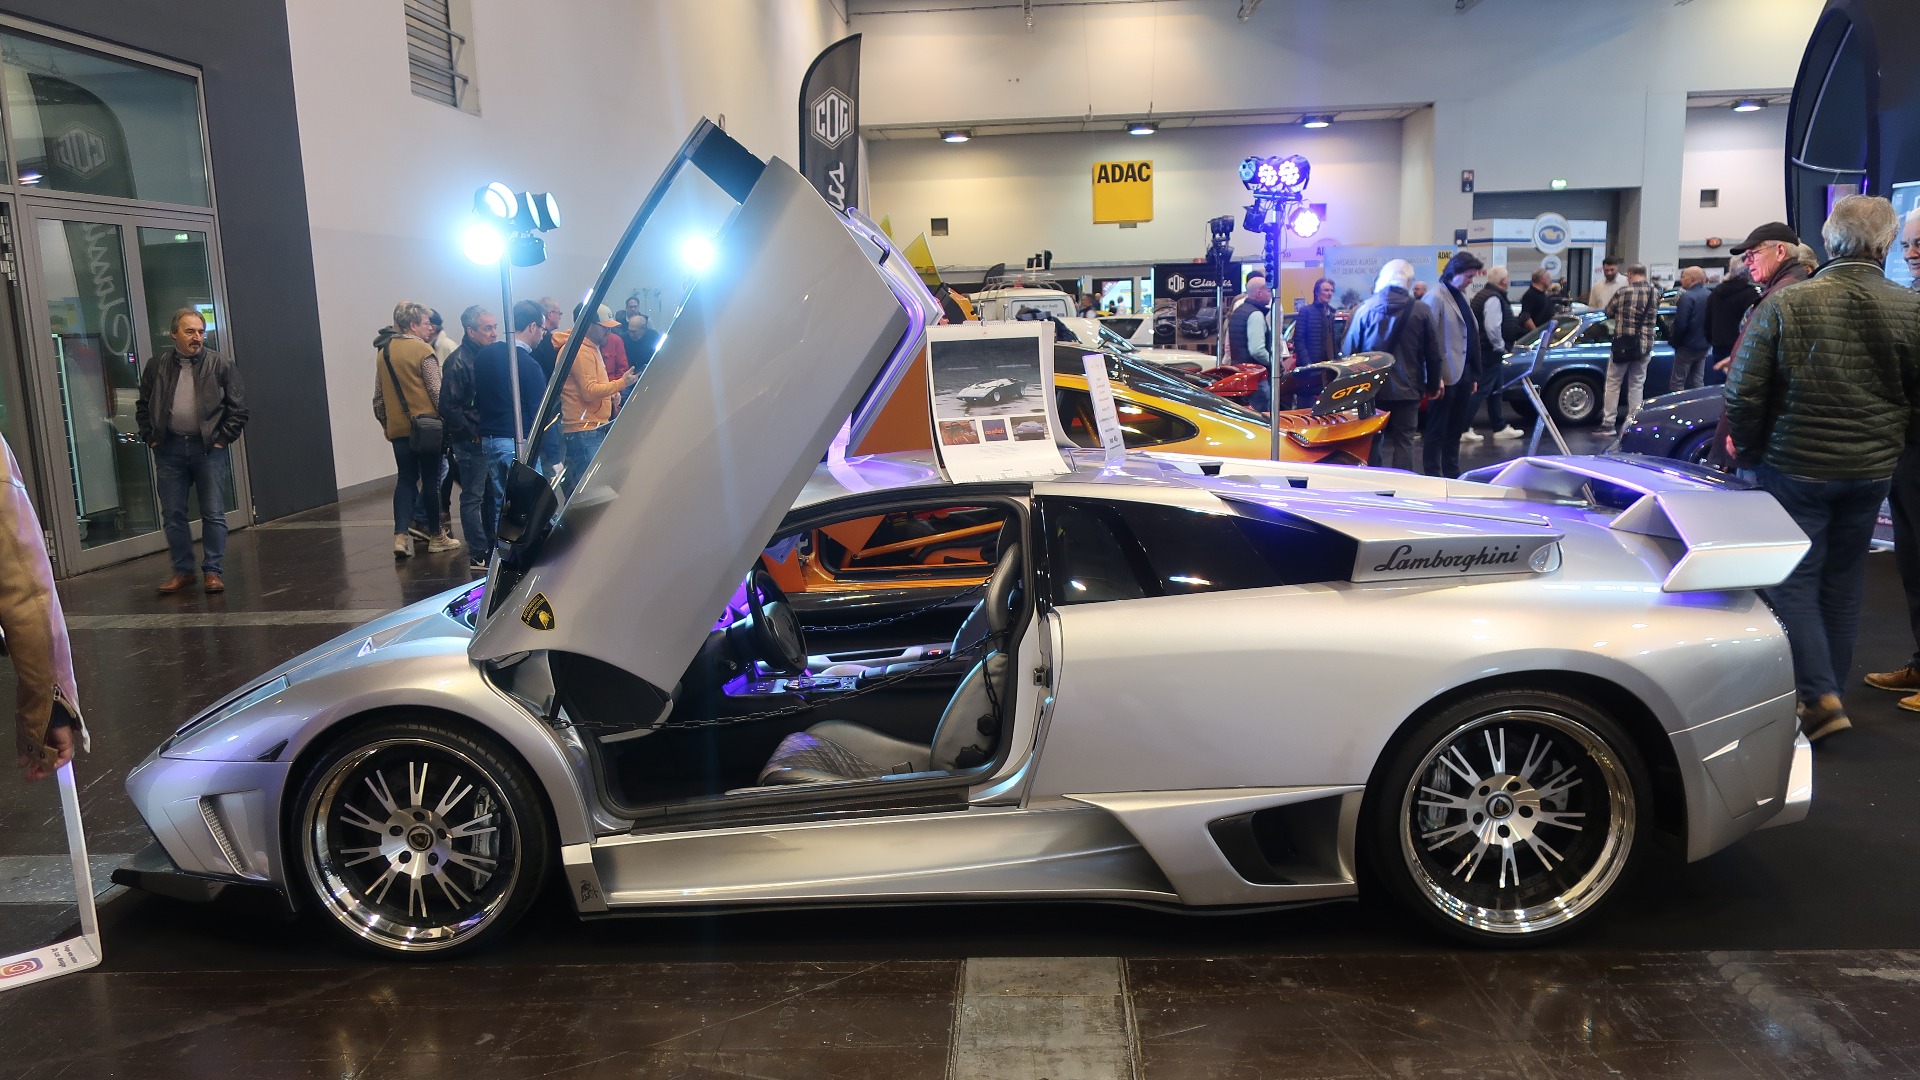 3 Lamborghini Murcielago bygget i SV-R stil med JB-R Aero Kit og masse annet smakløst dilldall.